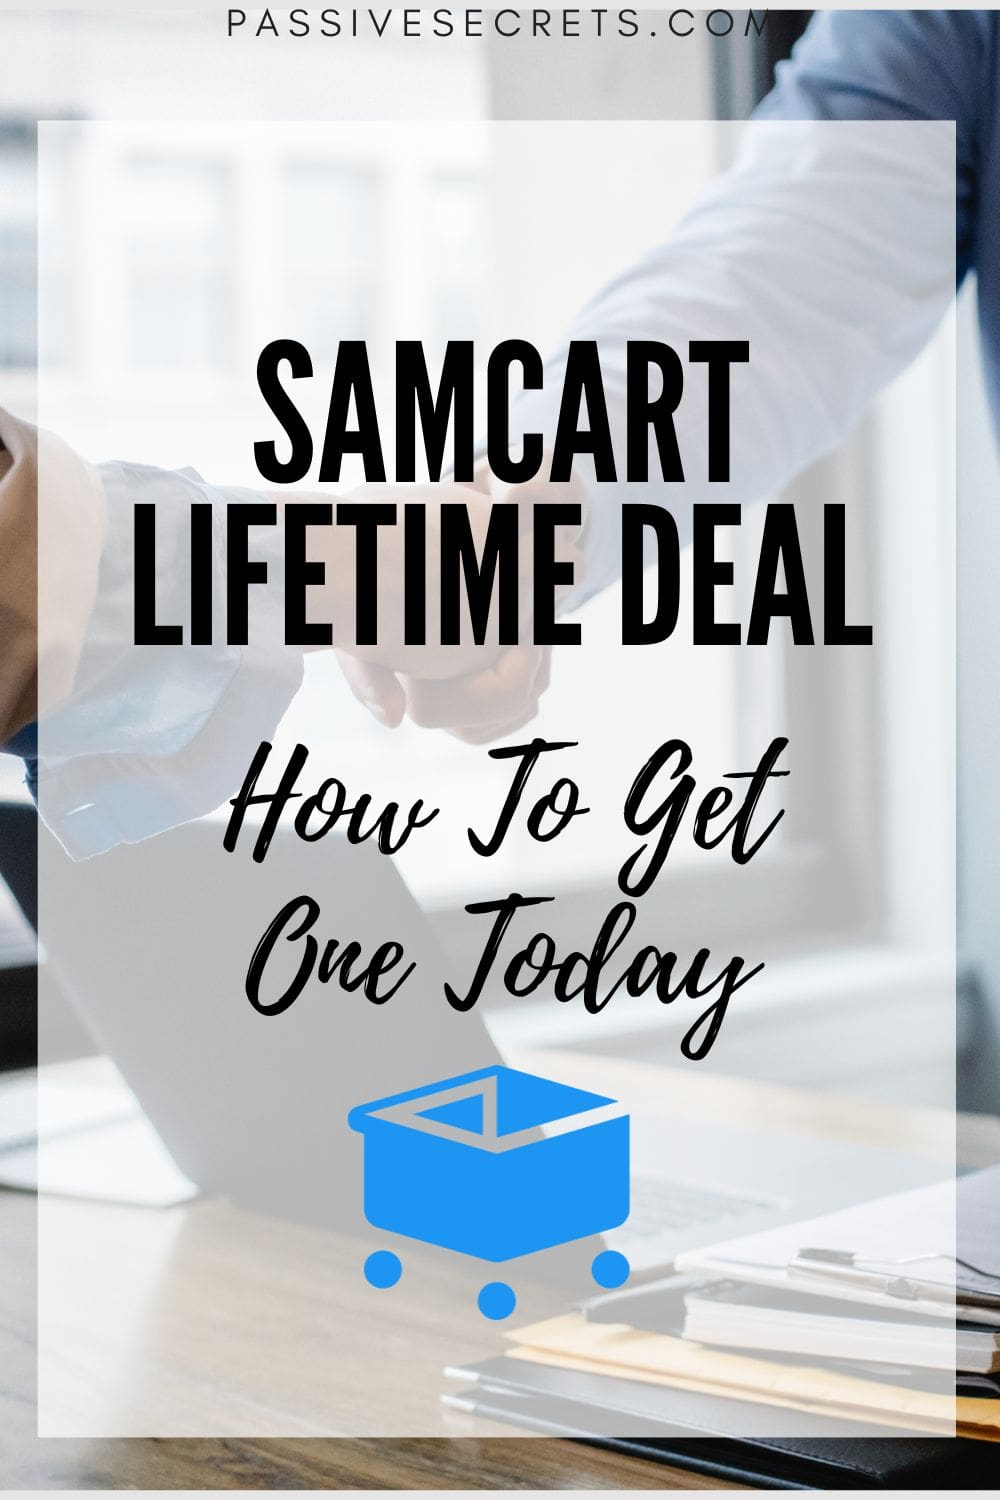 samcart lifetime deal PassiveSecrets